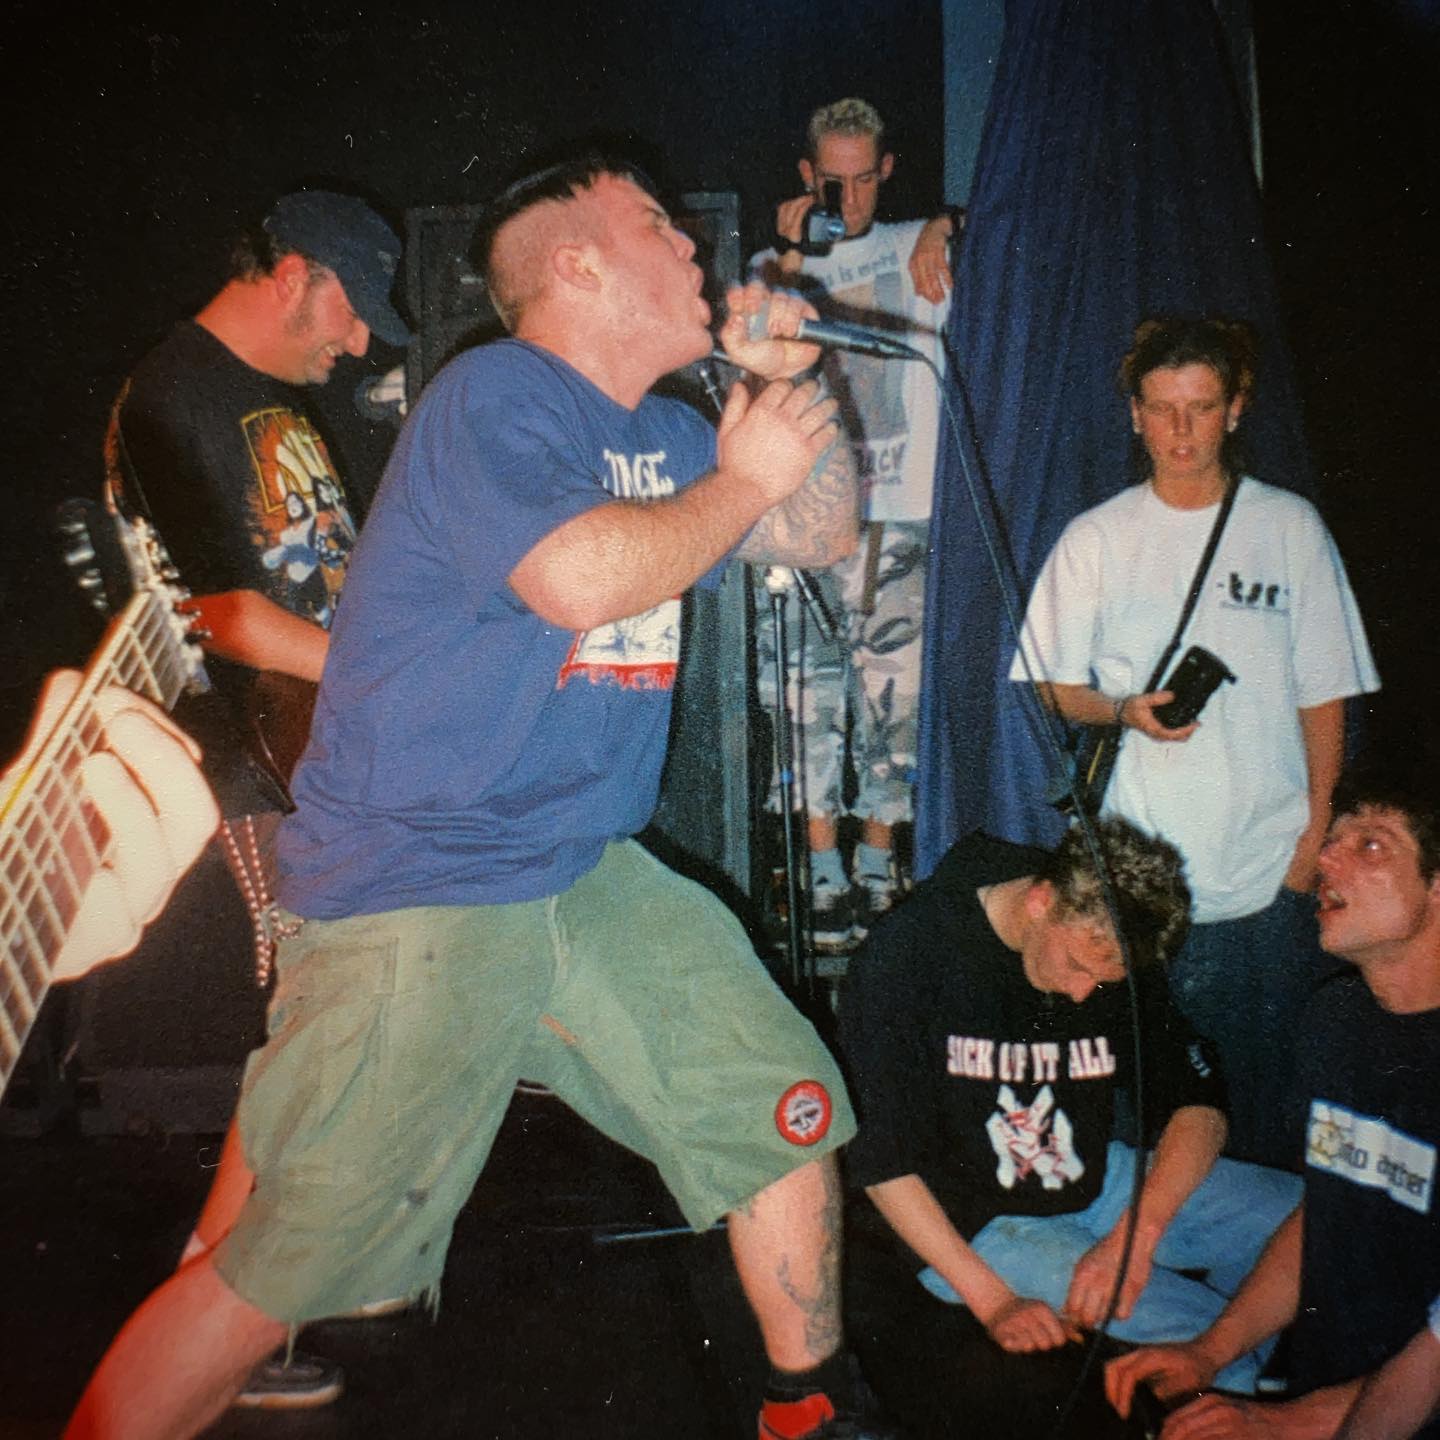 Integrity - Bolwerk Sneek NL - 3 May 1997 #hardcore #metal @integrityofficial pic by @twentylandcrew